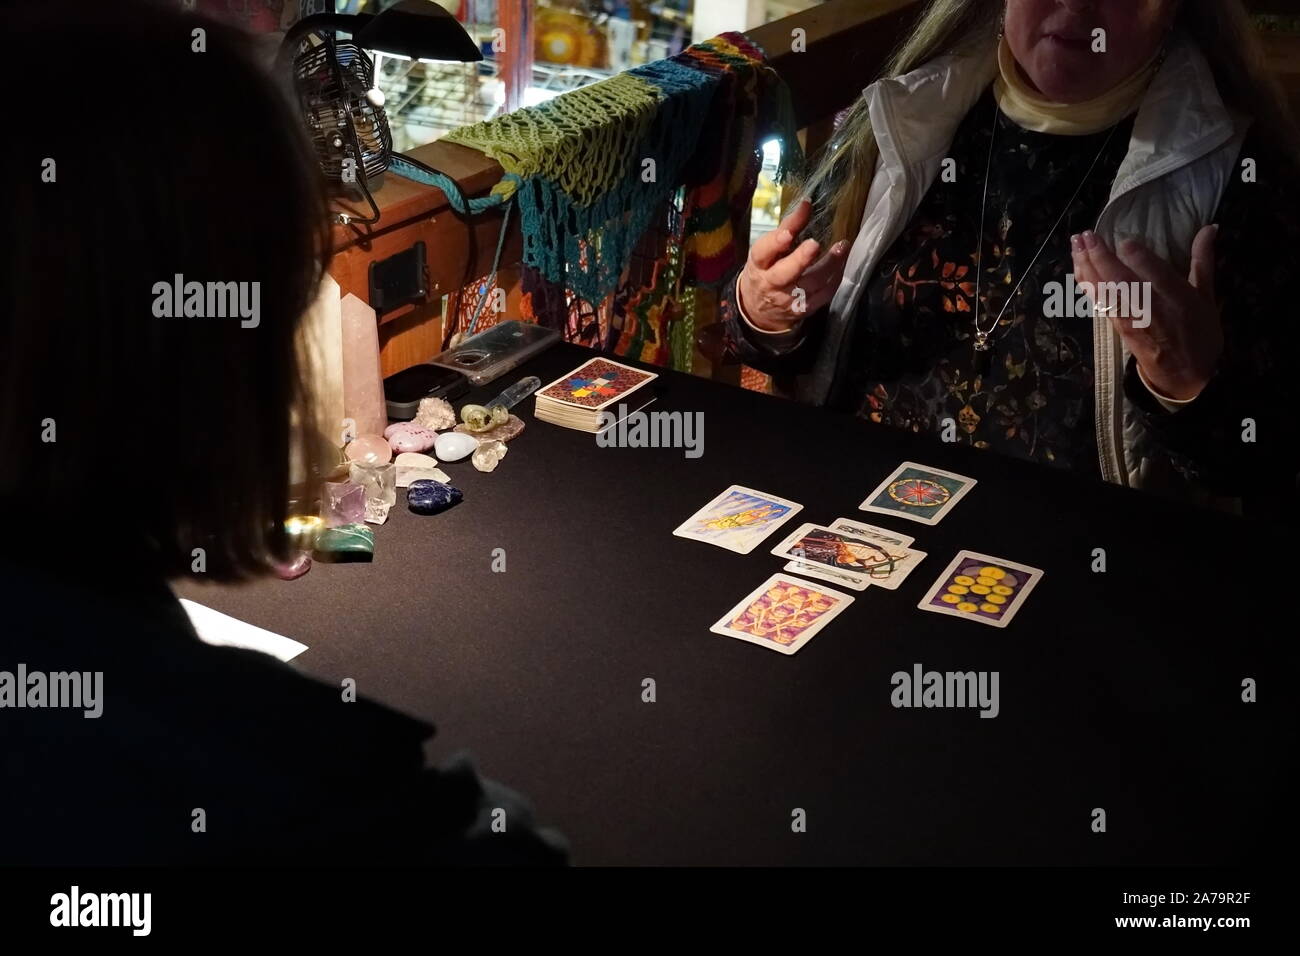 Boothbay Harbor, ME / USA - 20 octobre 2019 : lecteur de carte de tarot client raconte ses interprétations sur les cartes qu'elle a appelé depuis le pont Banque D'Images